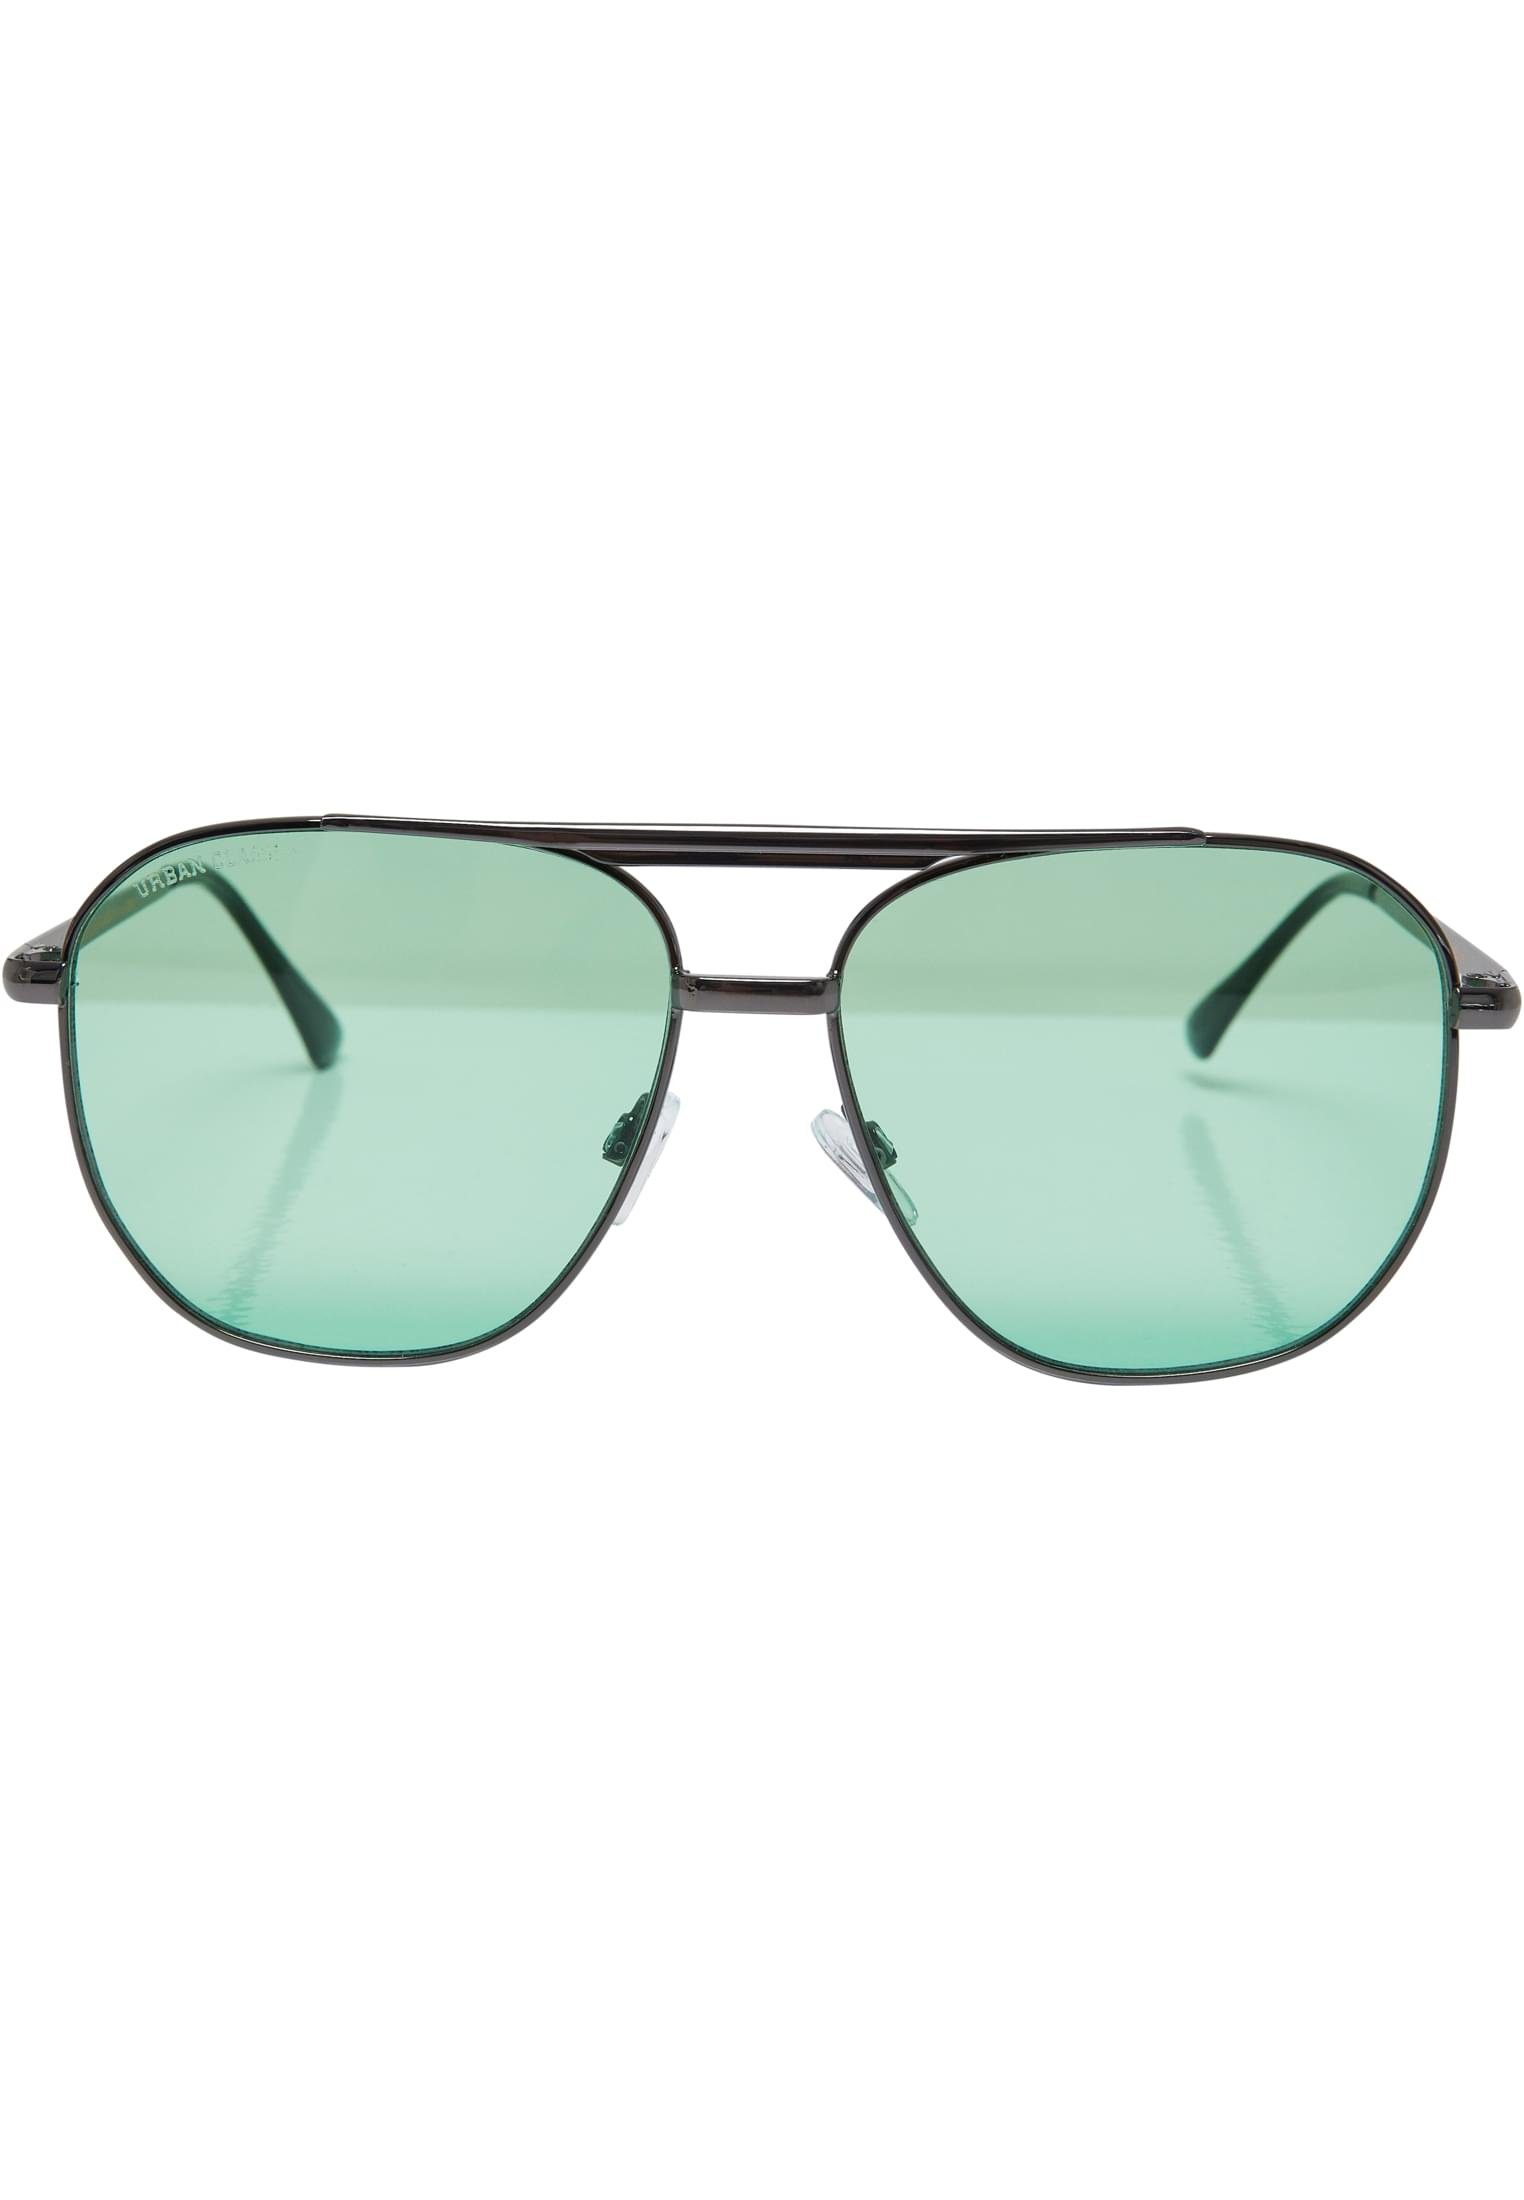 URBAN CLASSICS Sonnenbrille Unisex Sunglasses Manila gunmetal/leaf